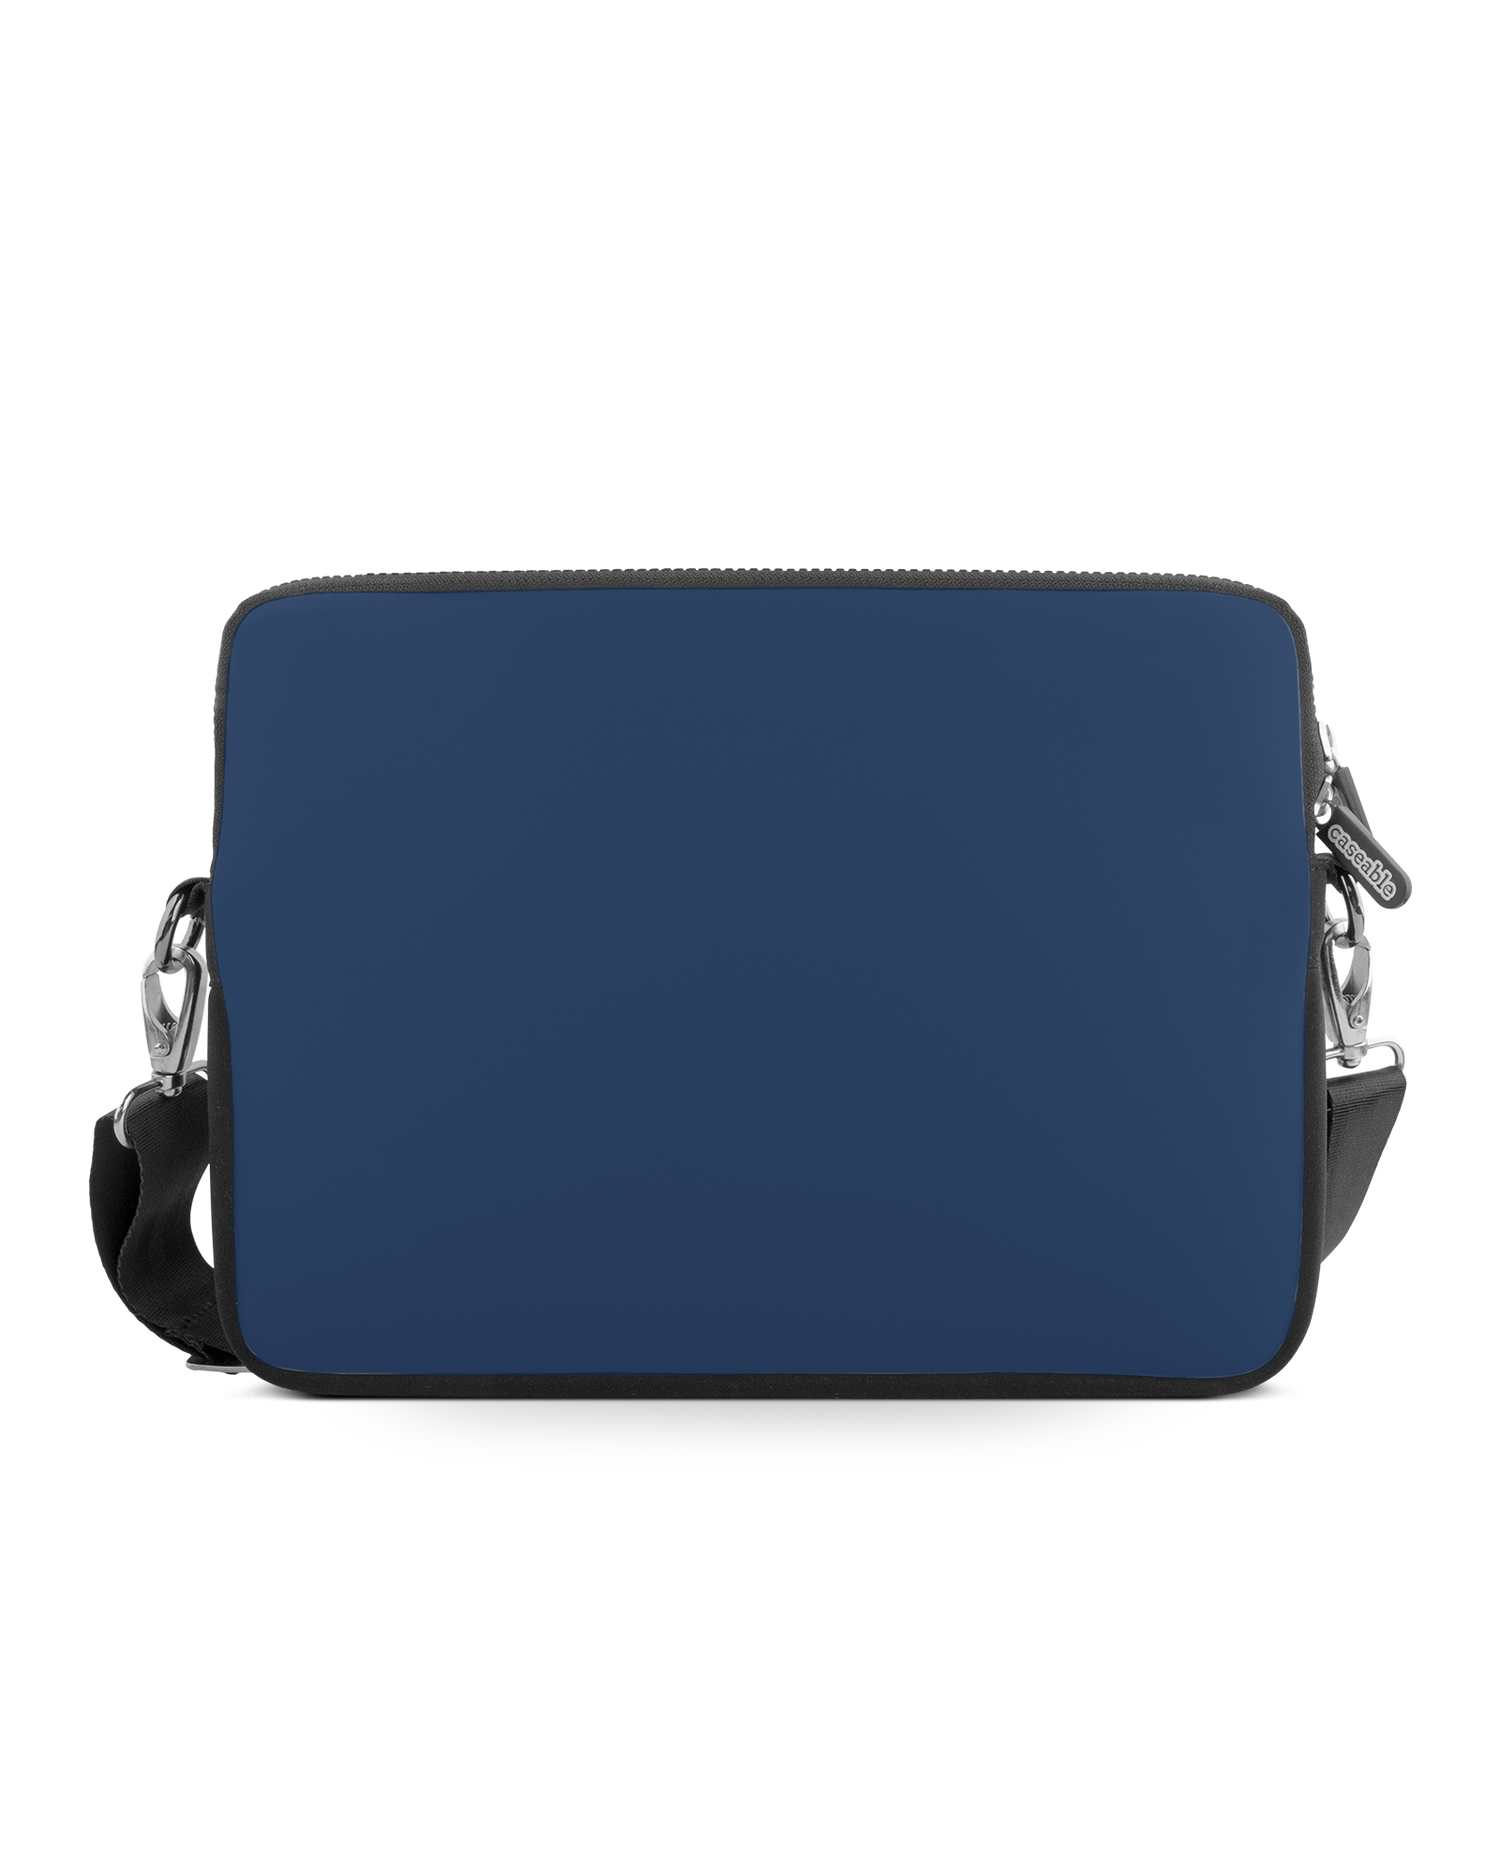 NAVY Premium Laptoptasche 15 Zoll: Vorderansicht